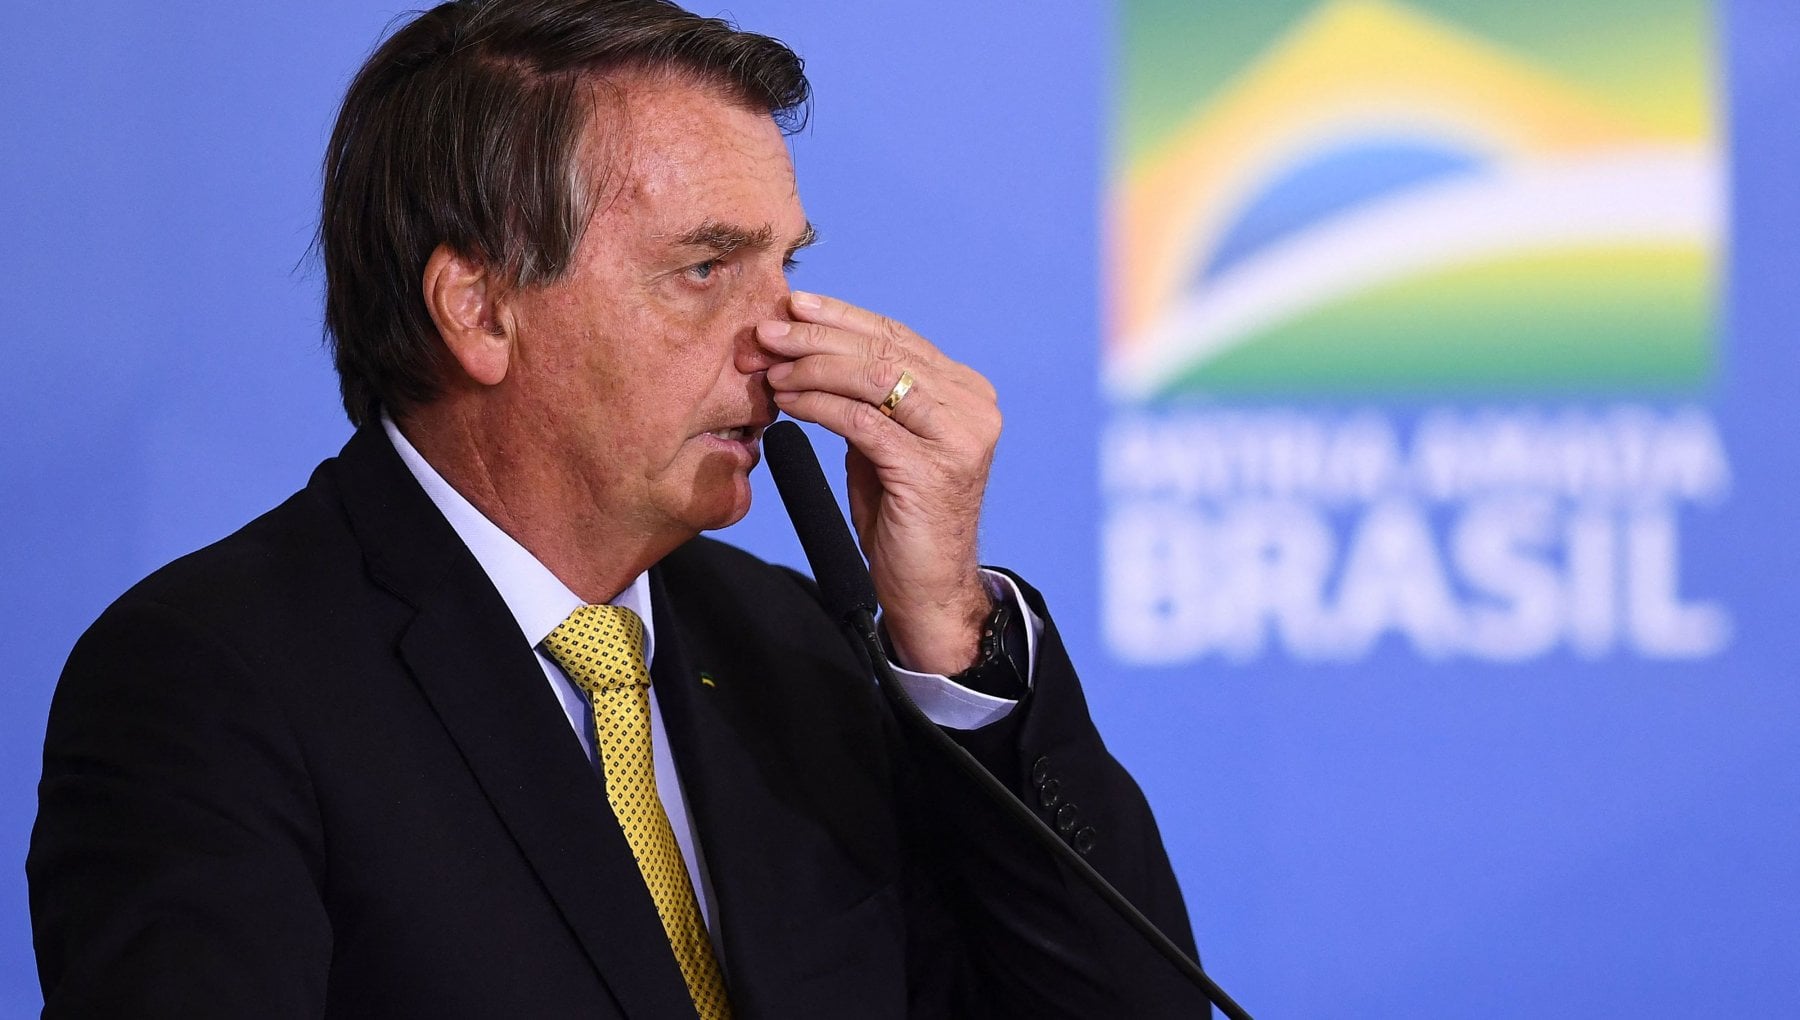 Brasile, scoperta una rete parallela di 007 che lavorava per favorire politicamente Bolsonaro